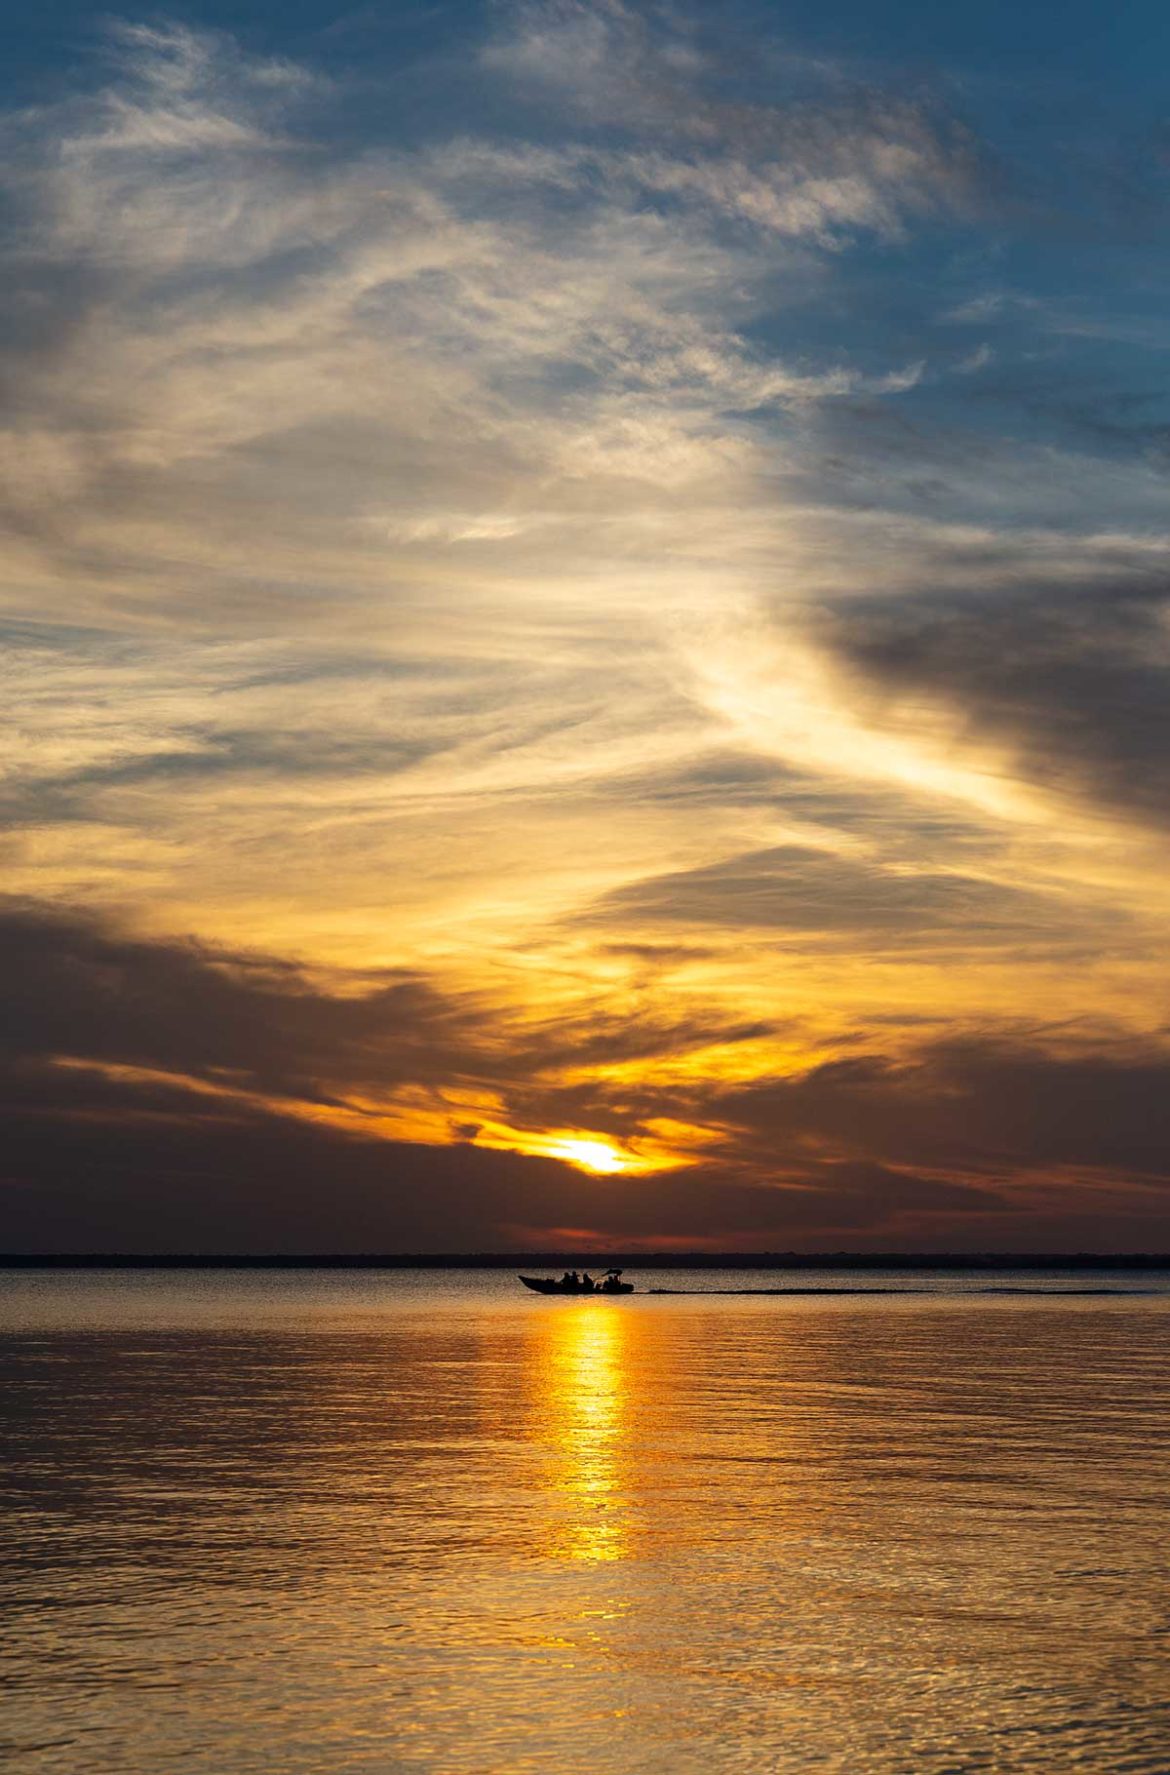 Barco passa no Rio Tapajós ao pôr do sol em Alter do Chão, no Pará (Brasil)